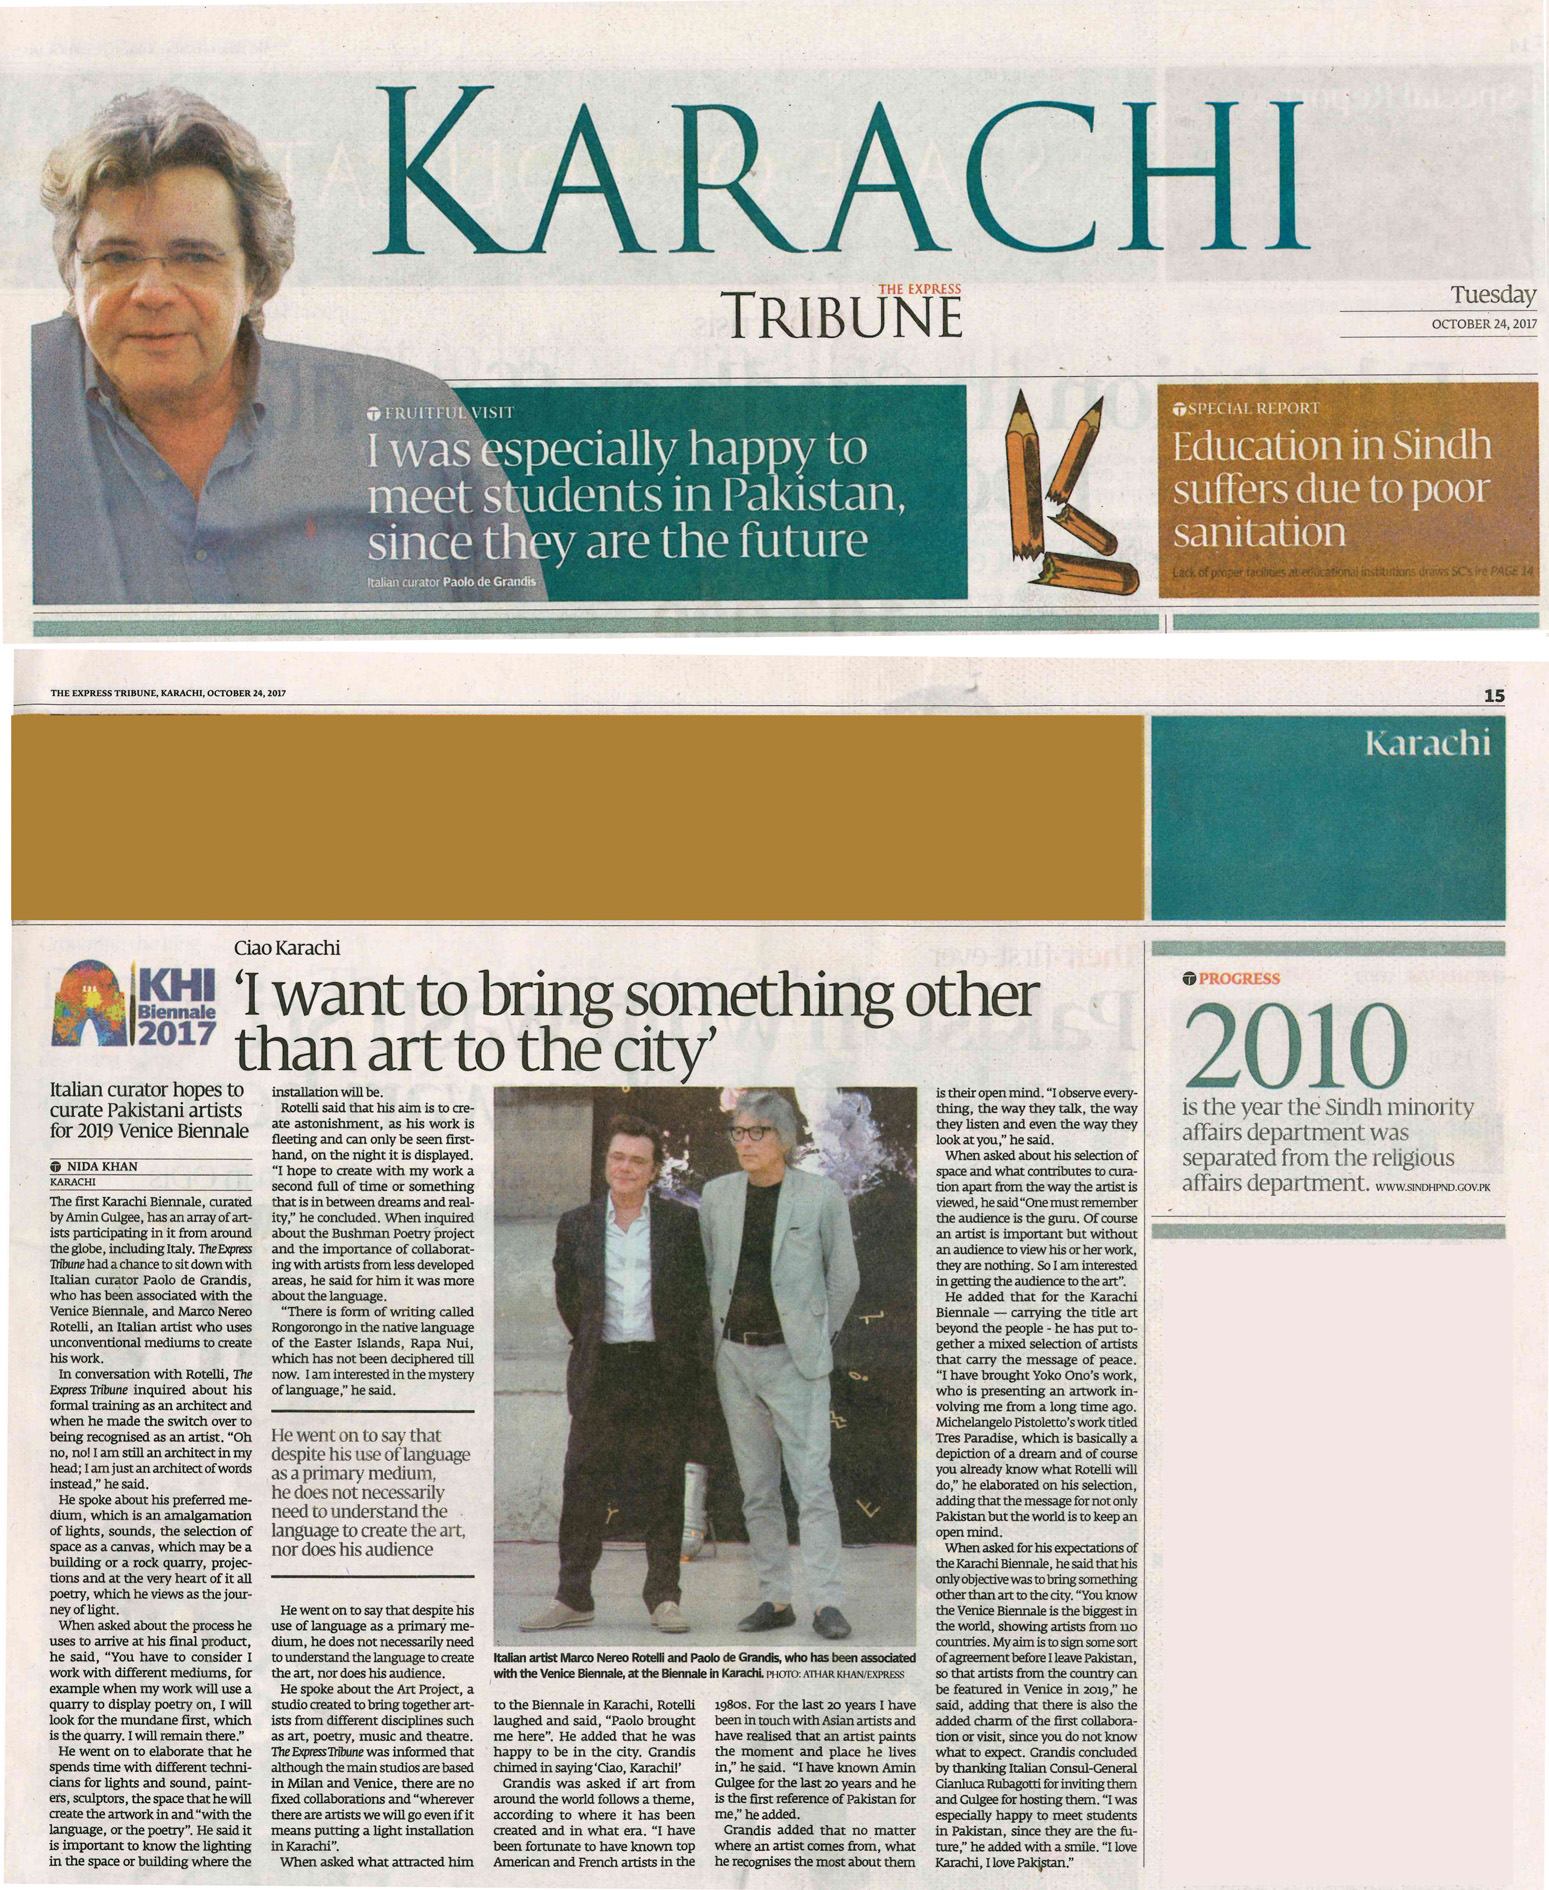 Karachi Tribune - Article on Paolo De Grandis